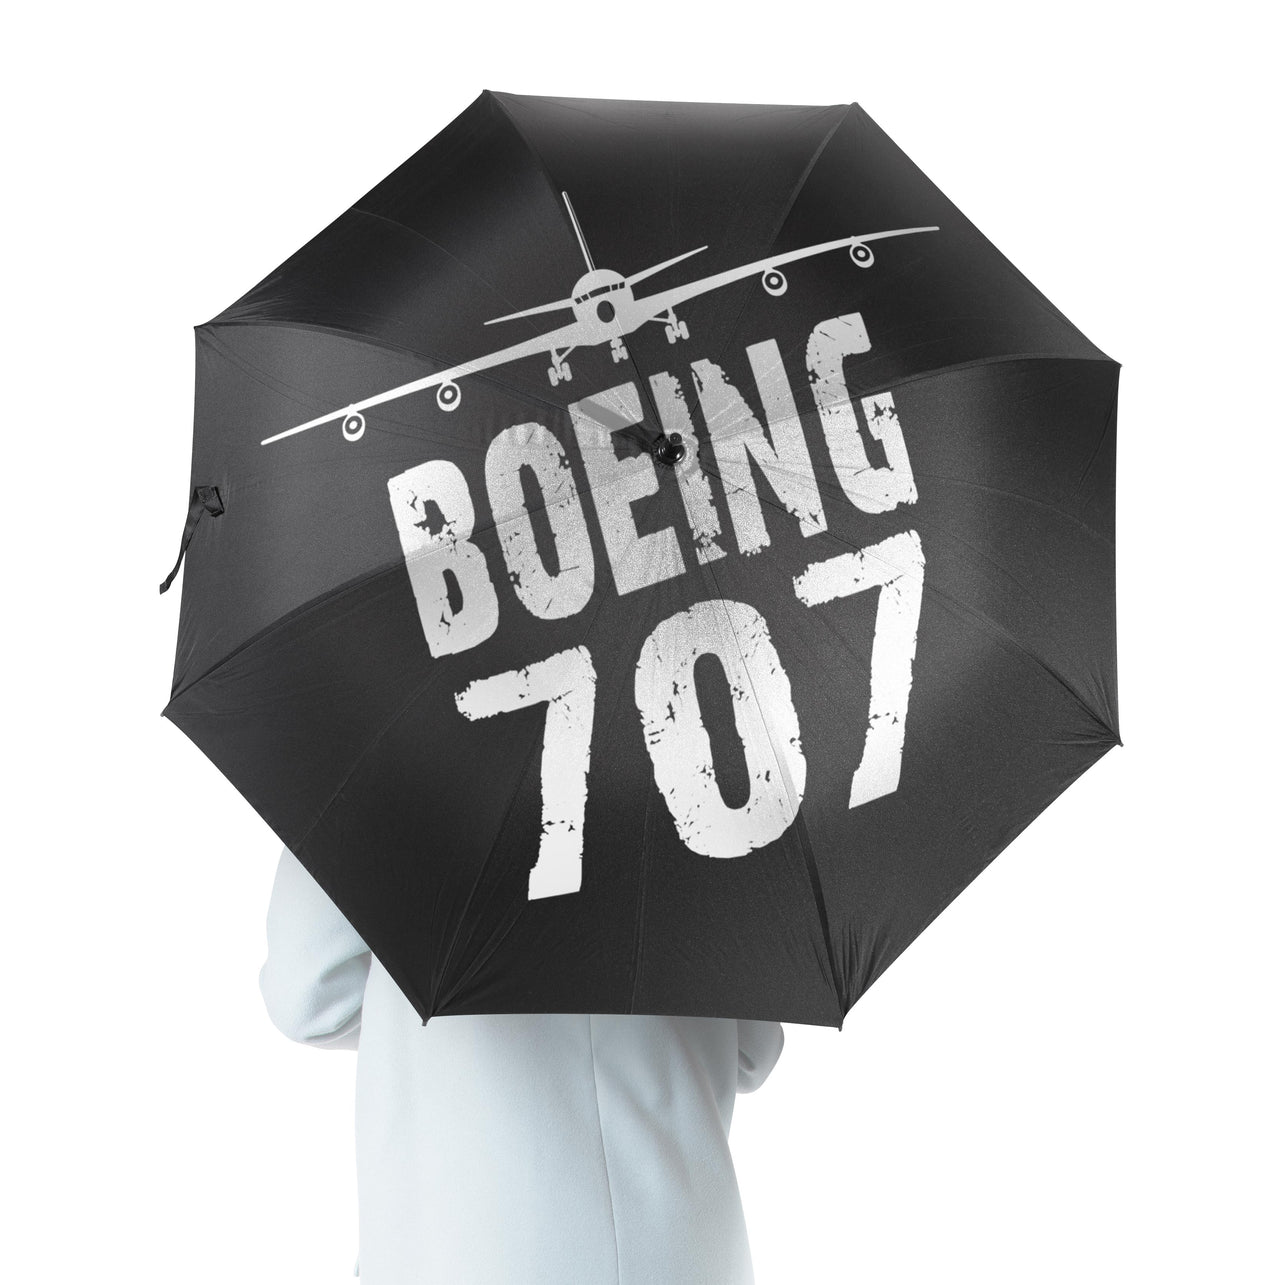 Boeing 707 & Plane Designed Umbrella